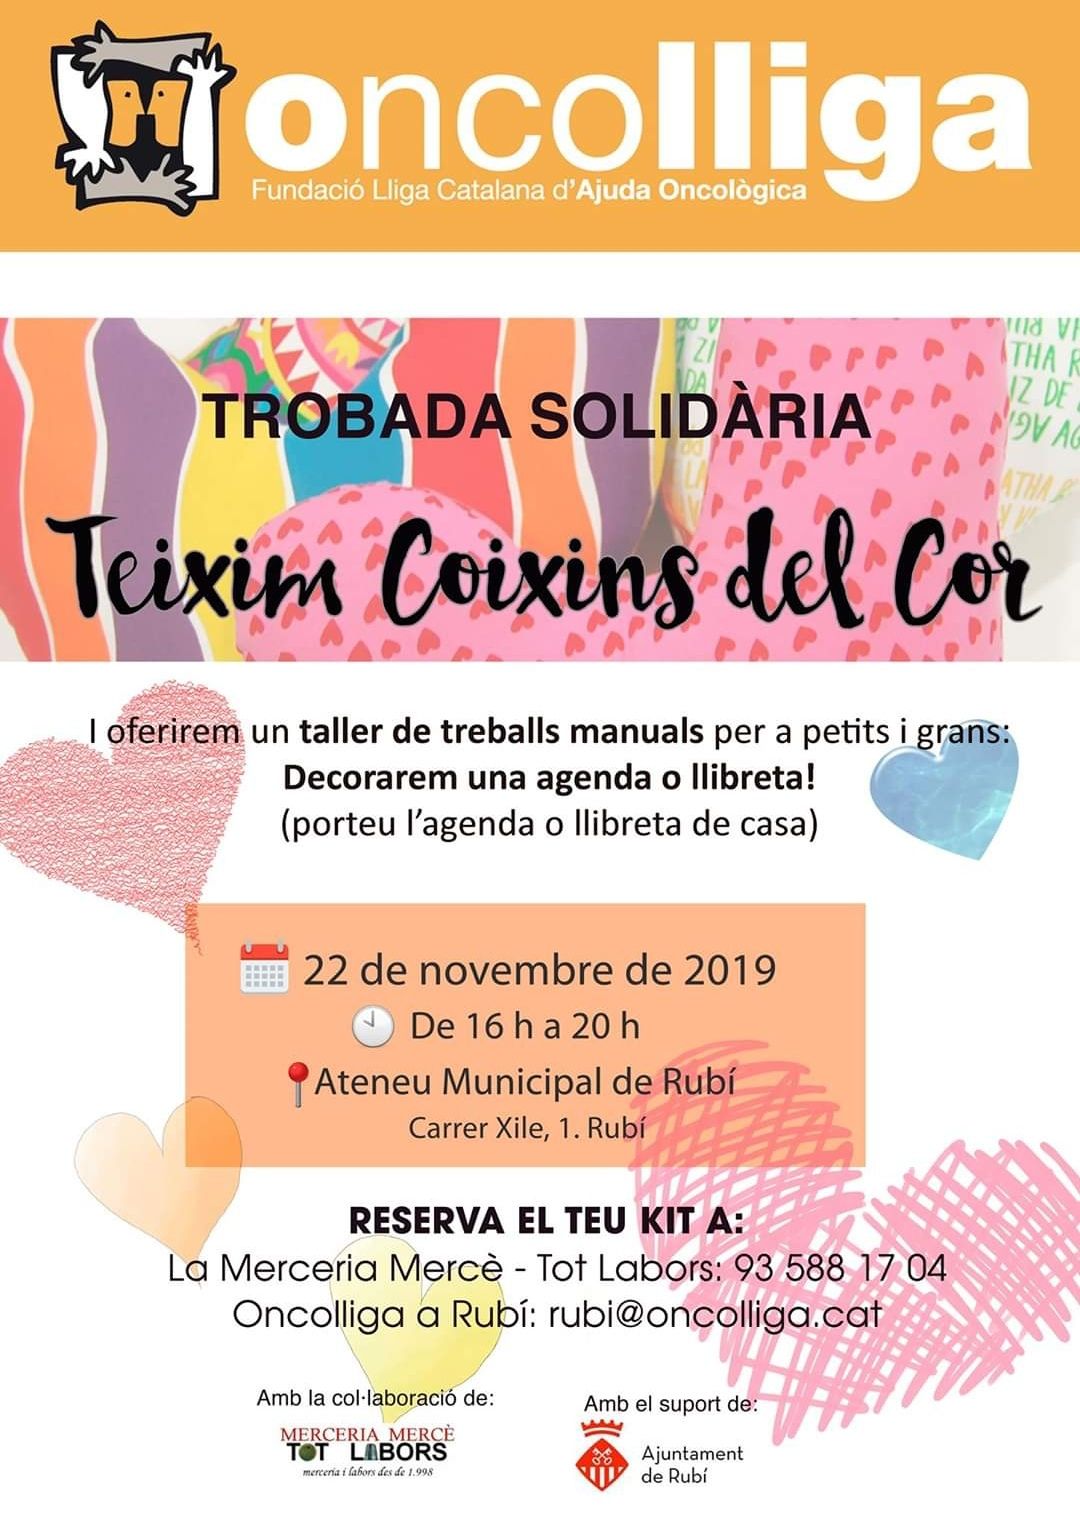 La trobada solidària tindrà lloc el 22 de novembre a l'Ateneu de Rubí, de 16 a 20 h.